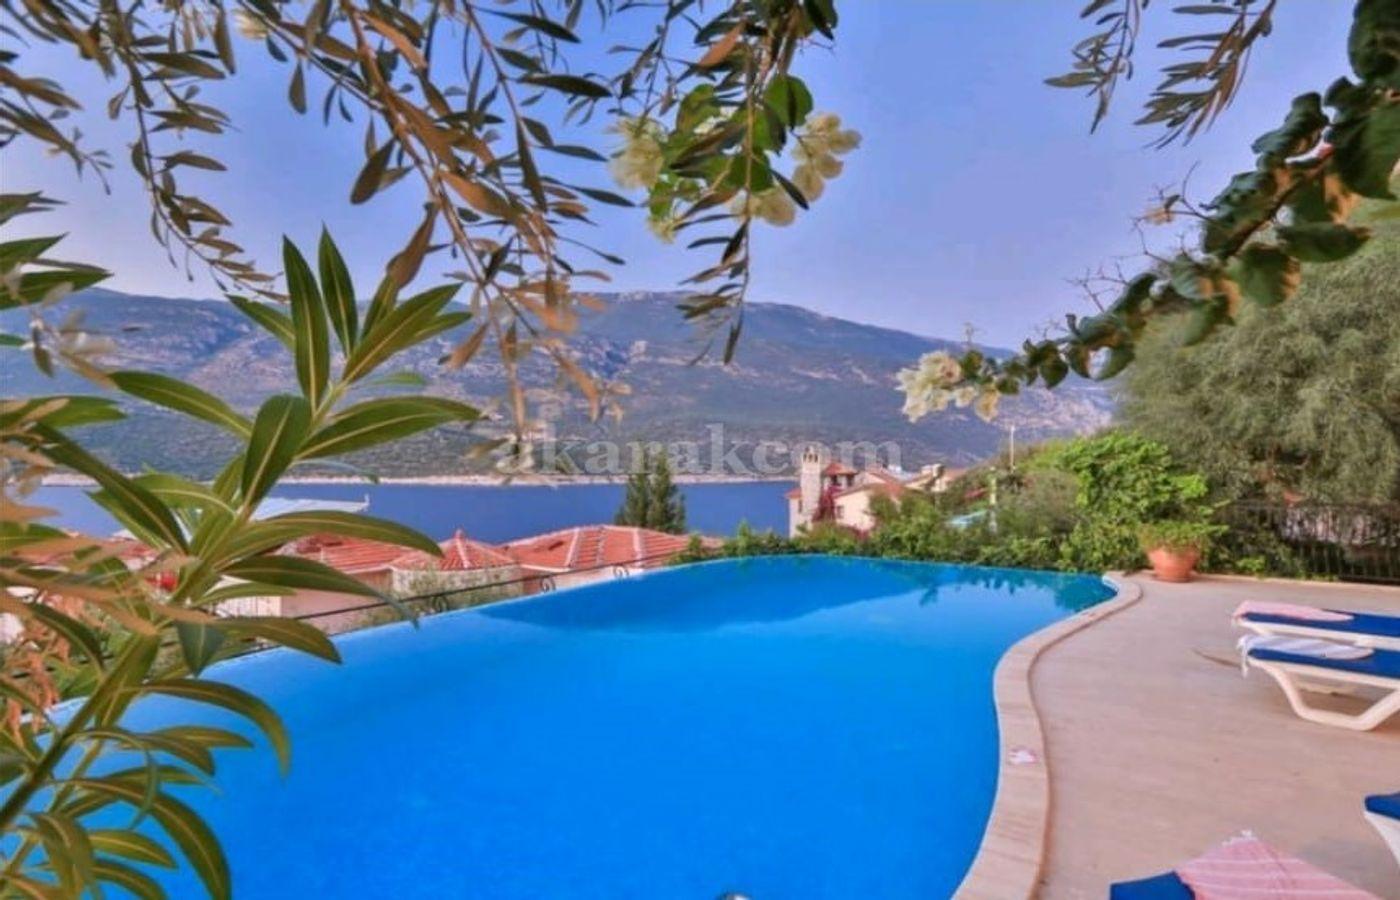 Sea Side Villas For Sale in Turkey | Sea View Villas For Sale in Antalya